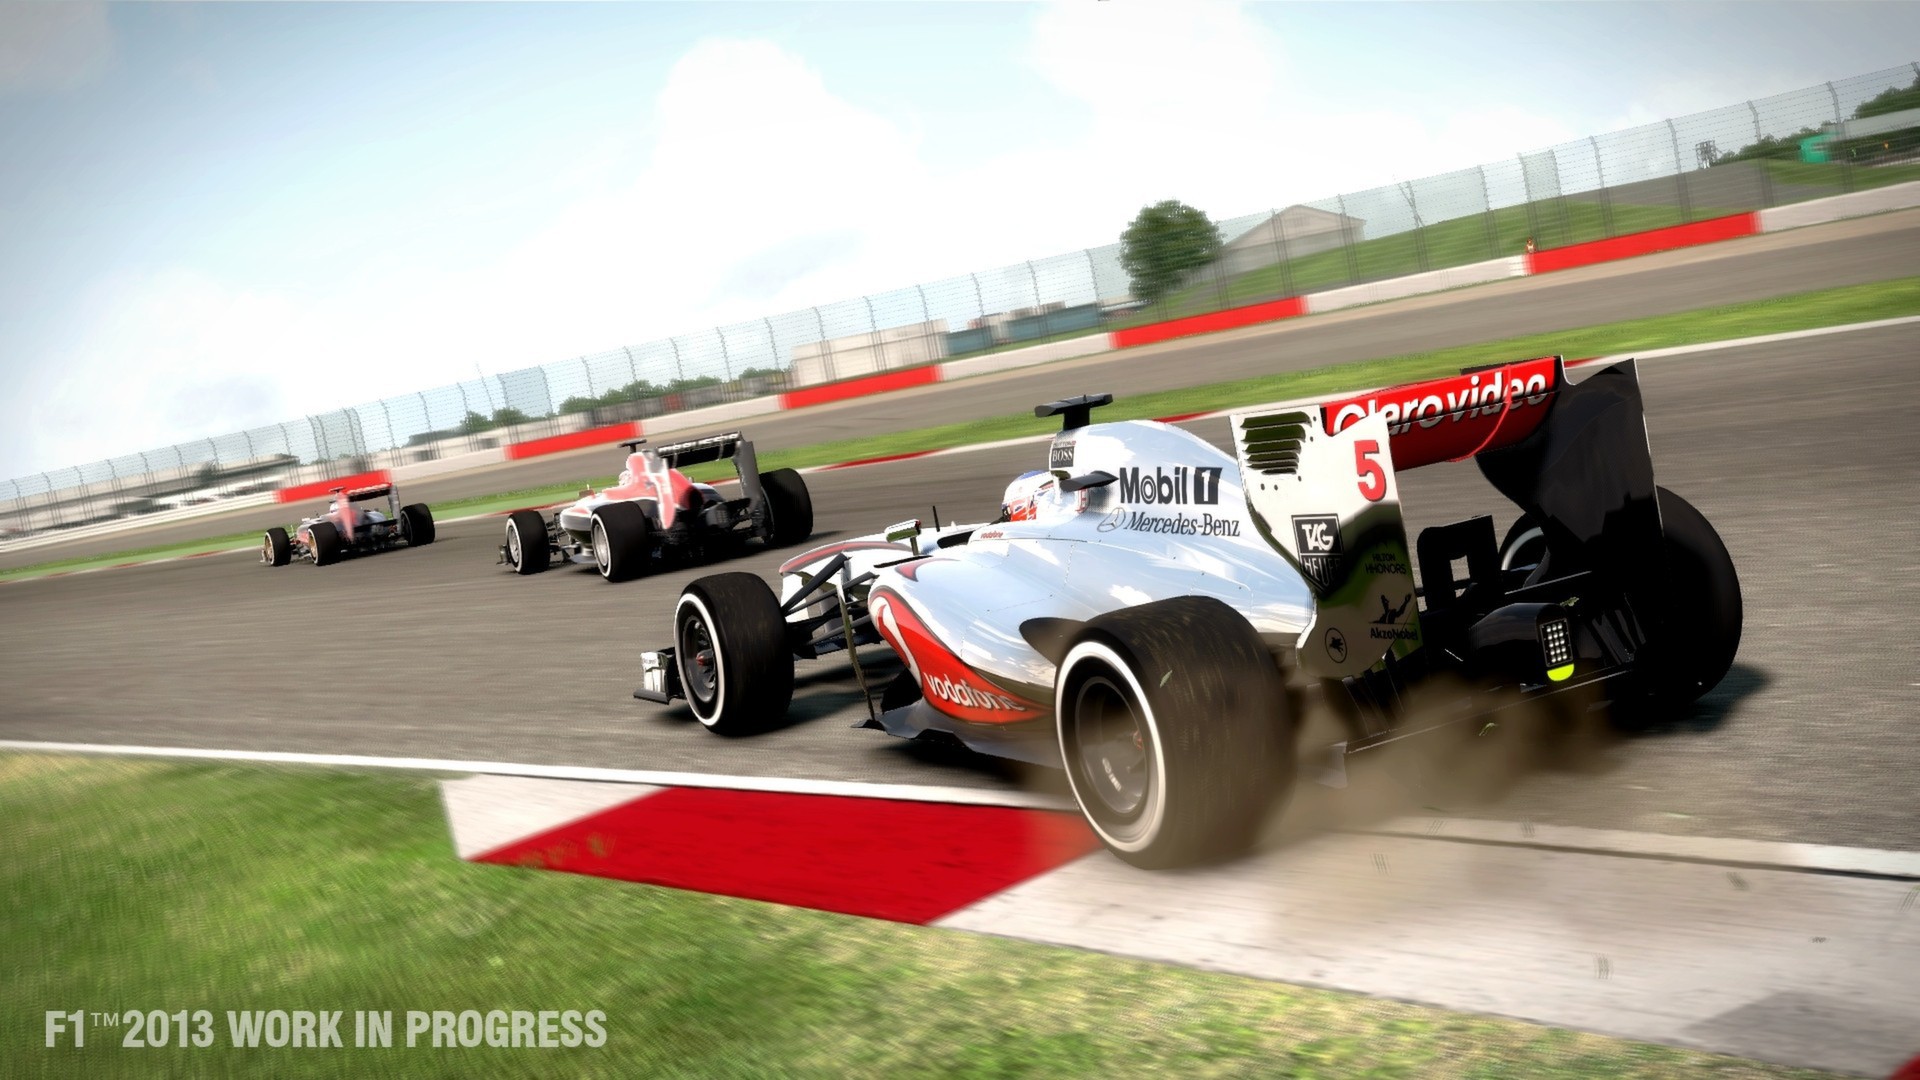 Wymagania sprzętowe F1 2013 ujawnione. Będzie pełna polska wersja językowa?